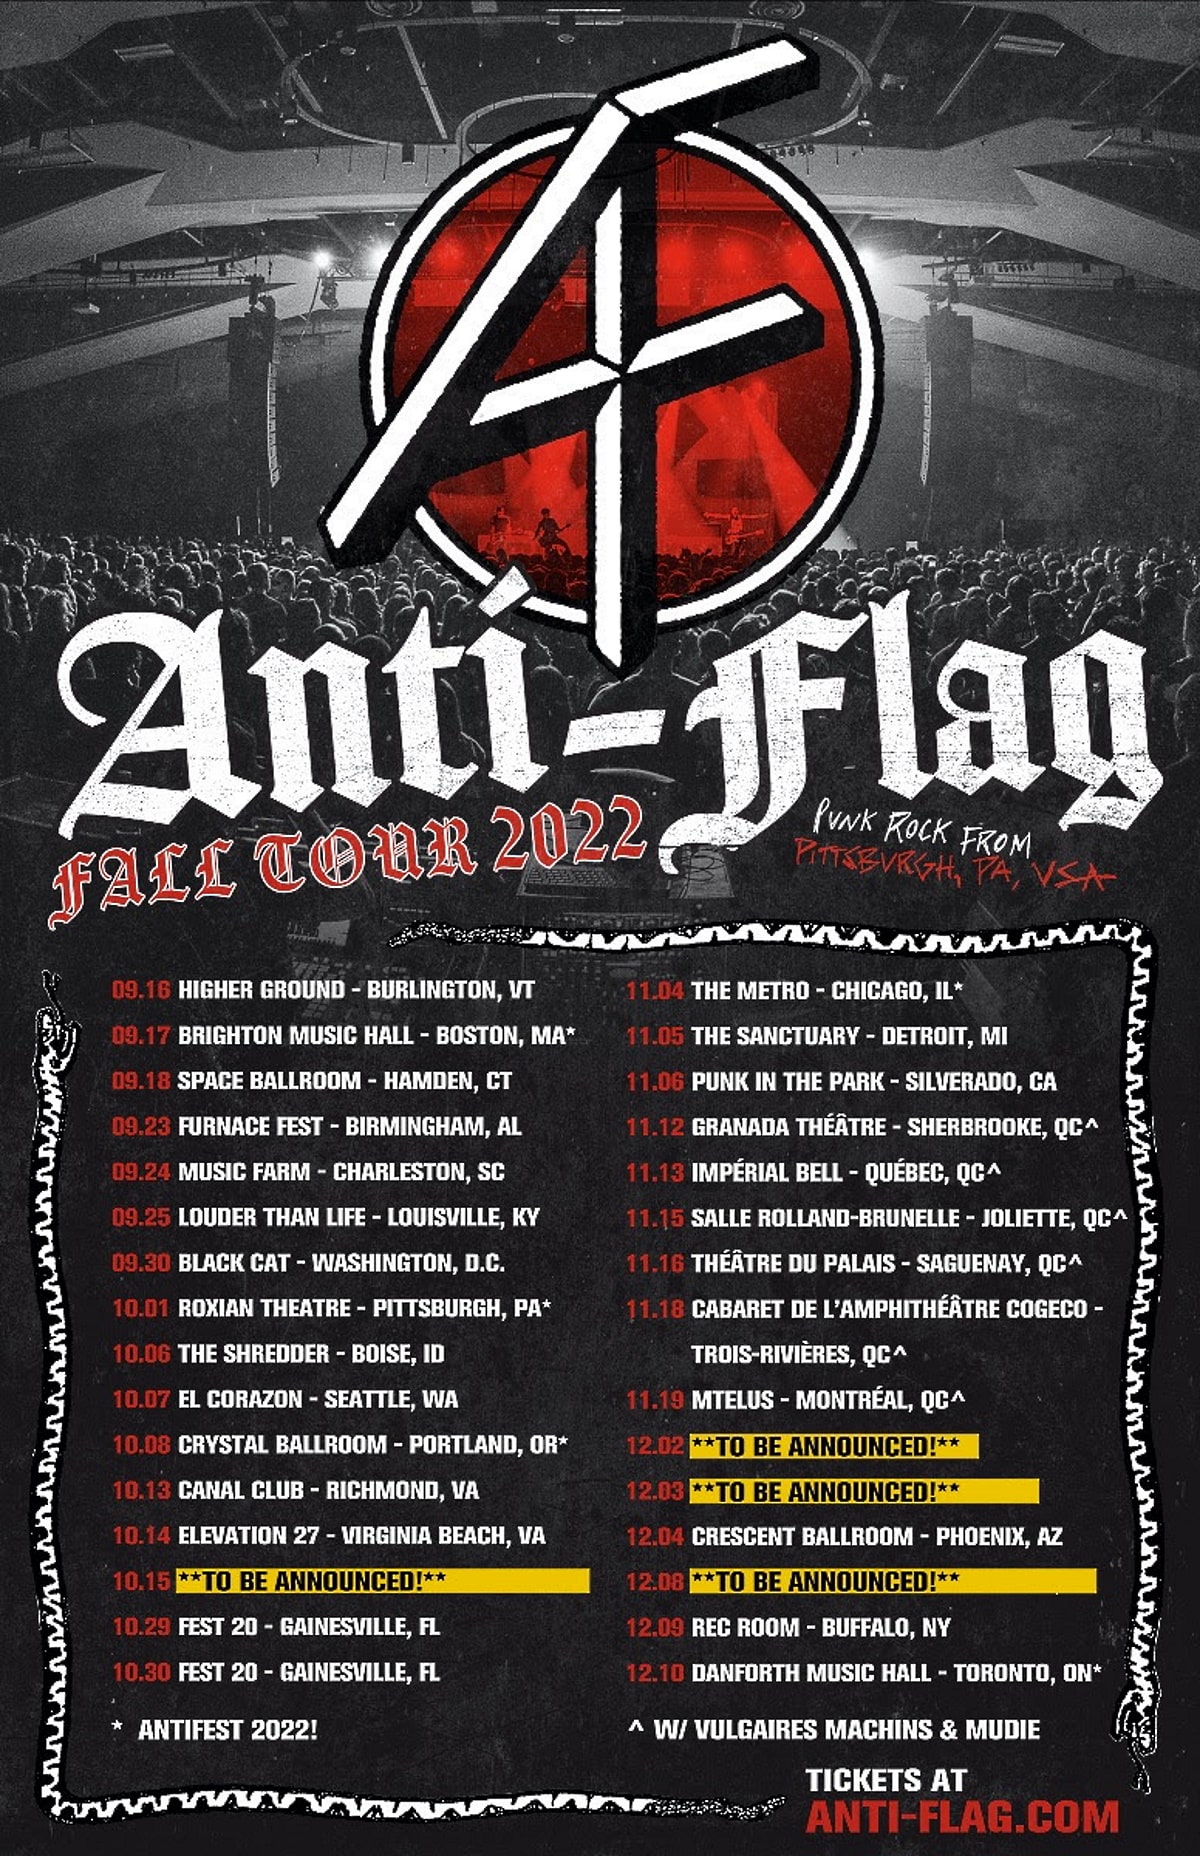 ANTI FLAG tour dates